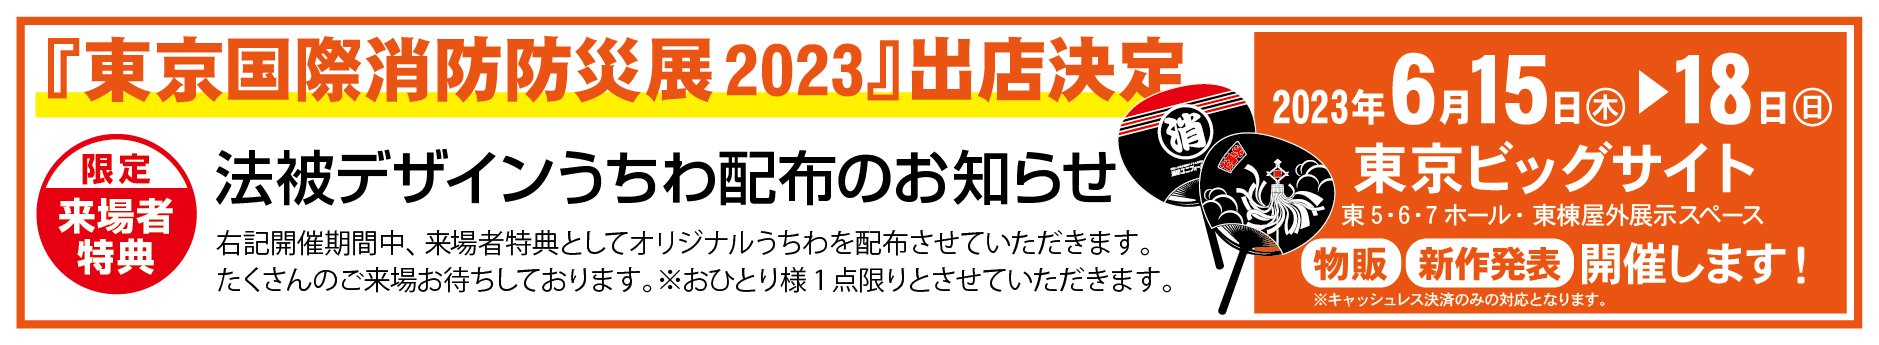 東京国際消防防災展2023 出展のお知らせ